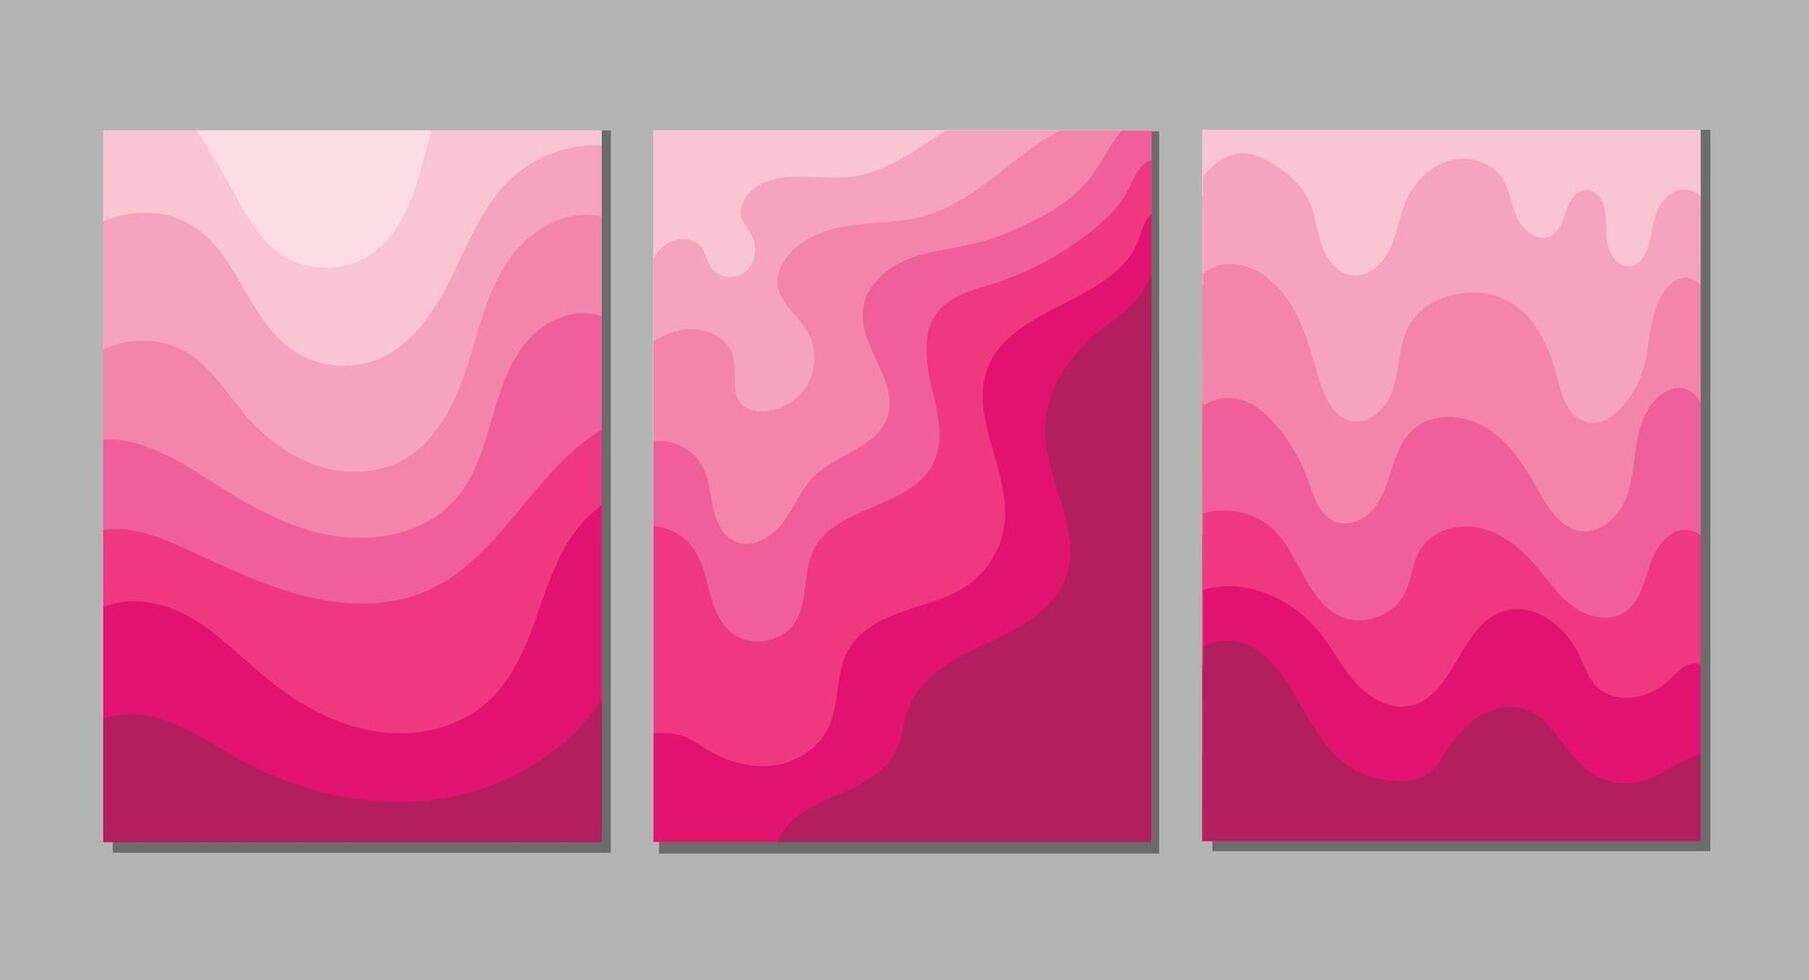 di moda coperture impostare. freddo astratto rosa onda modello e maschera Usato, facile per ridimensionare. per i Quaderni, pianificatori, opuscoli, libri, cataloghi eccetera. vettore illustrazione.